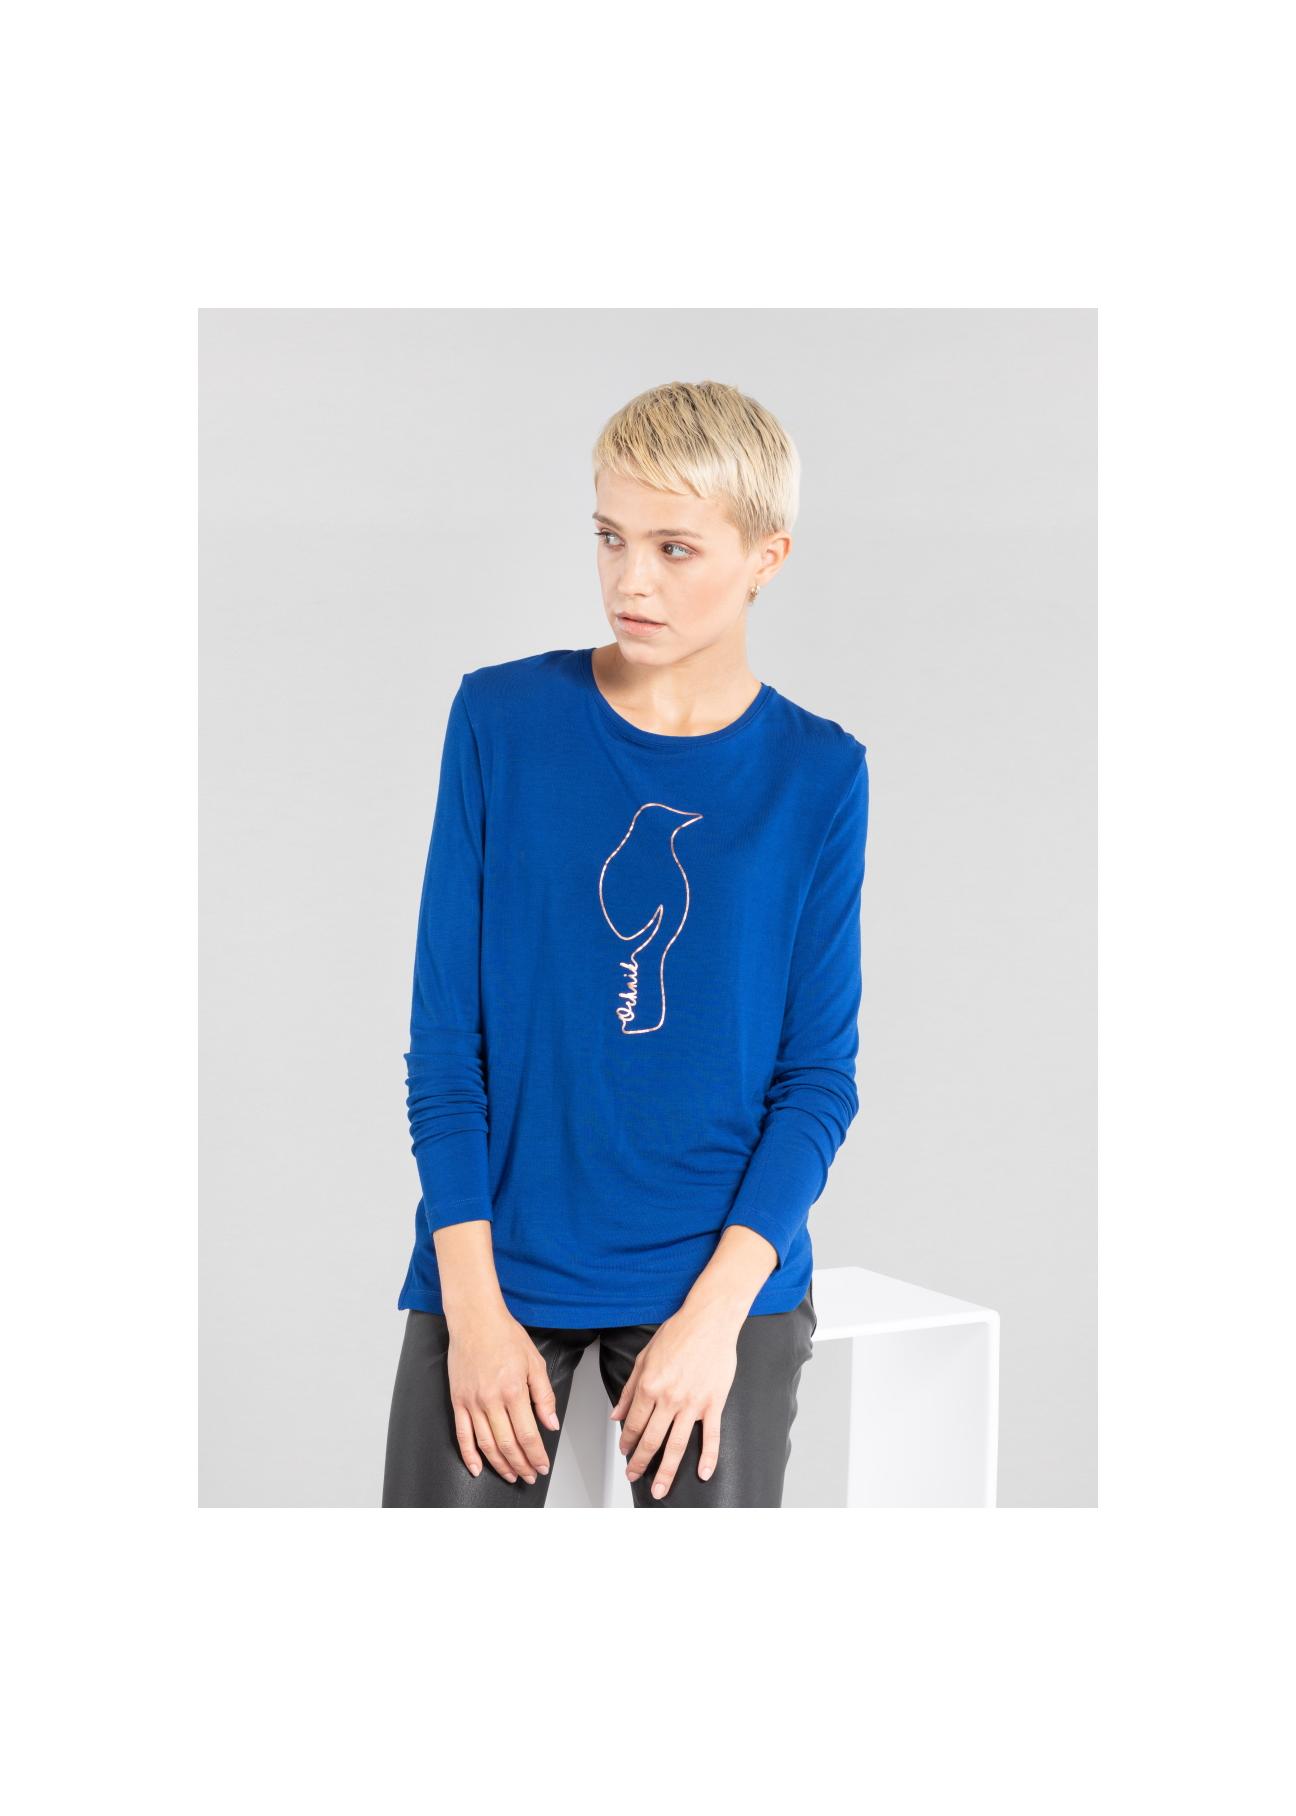 Niebieska bluzka damska ze srebrną wilgą LSLDT-0016-61(Z20)